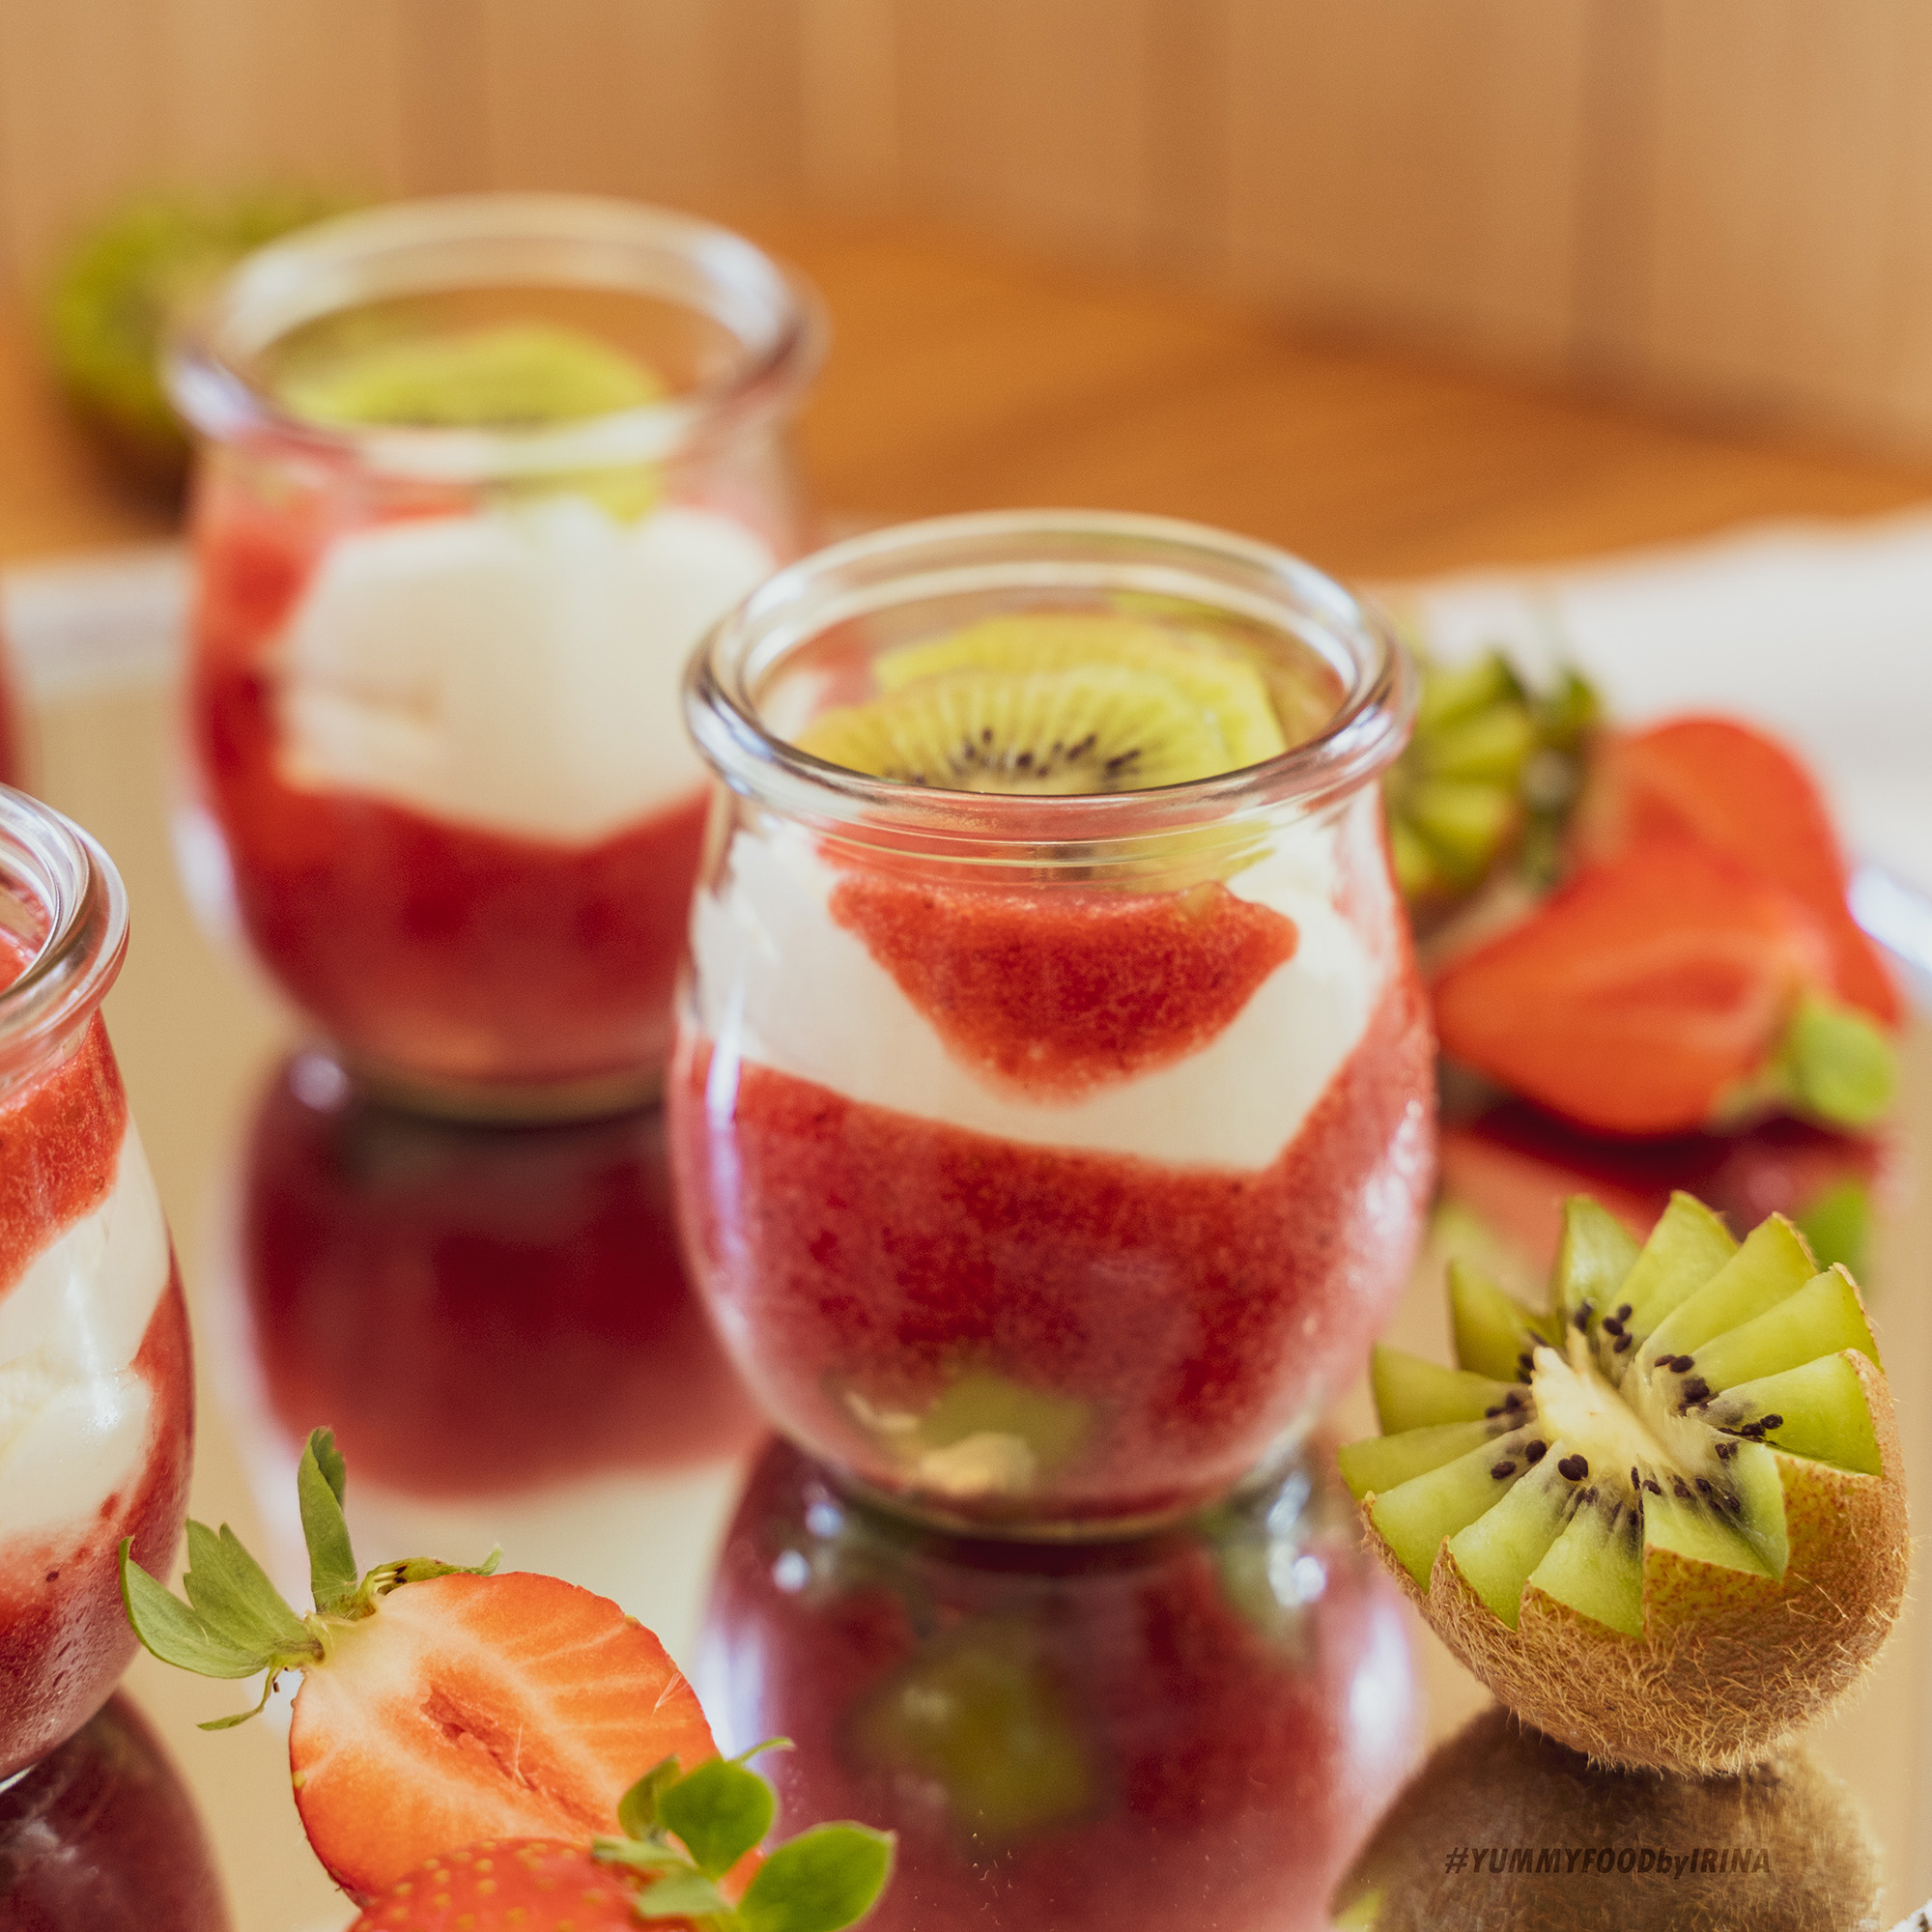 Erdbeer-Kiwi-Joghurtdessert - YUMMYFOODbyirina